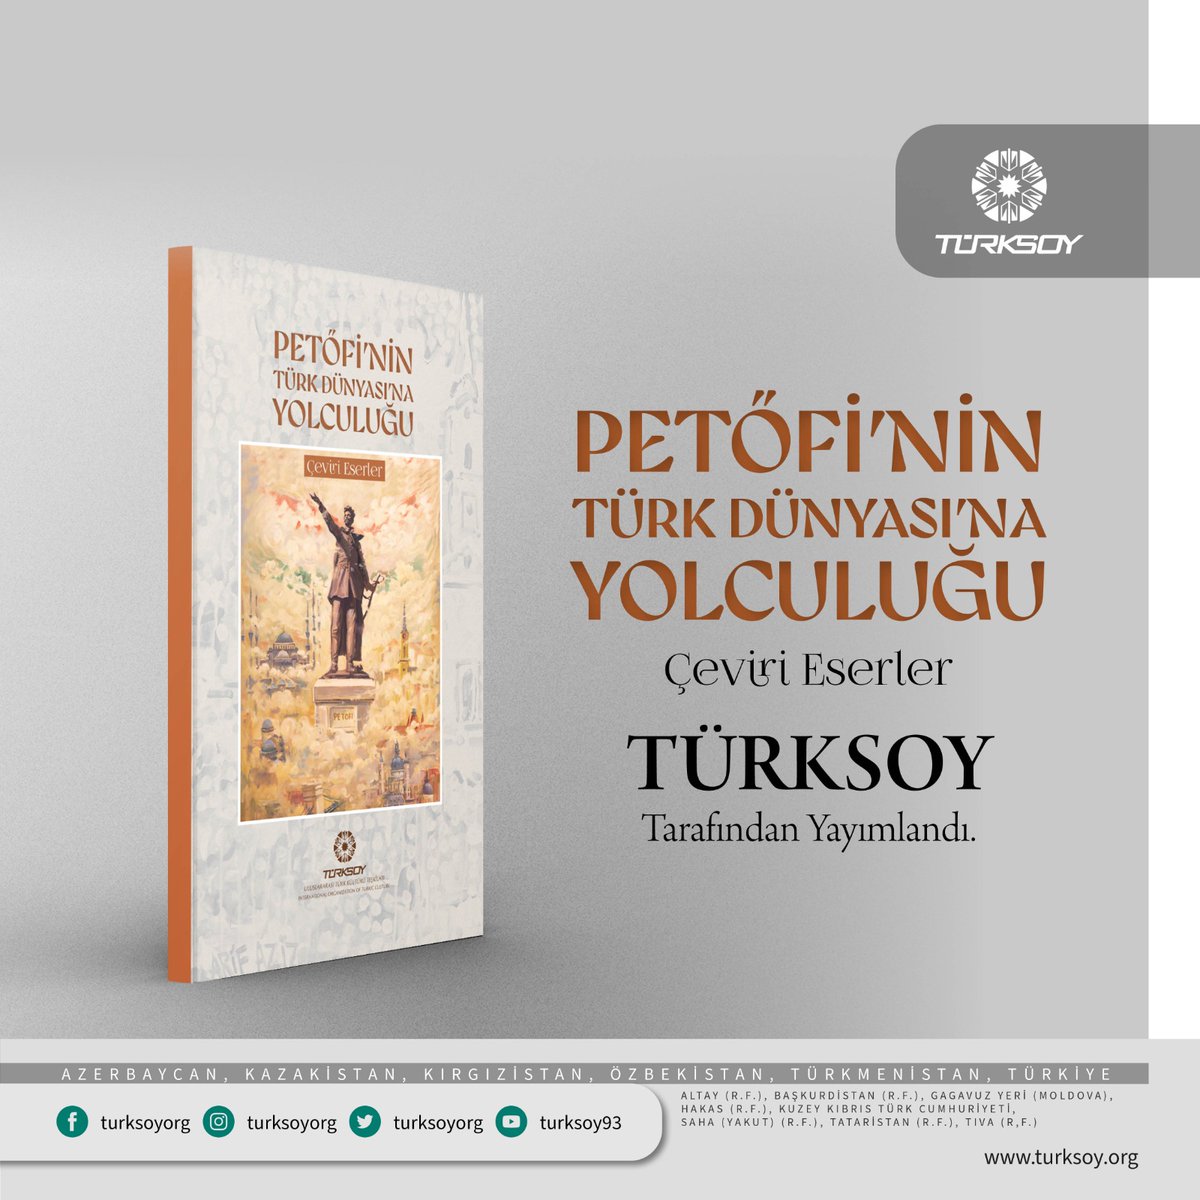 Petöfi'nin Türk Dünyası'na Yolculuğu Çeviri Eserler kitabı TÜRKSOY tarafından yayımlandı.